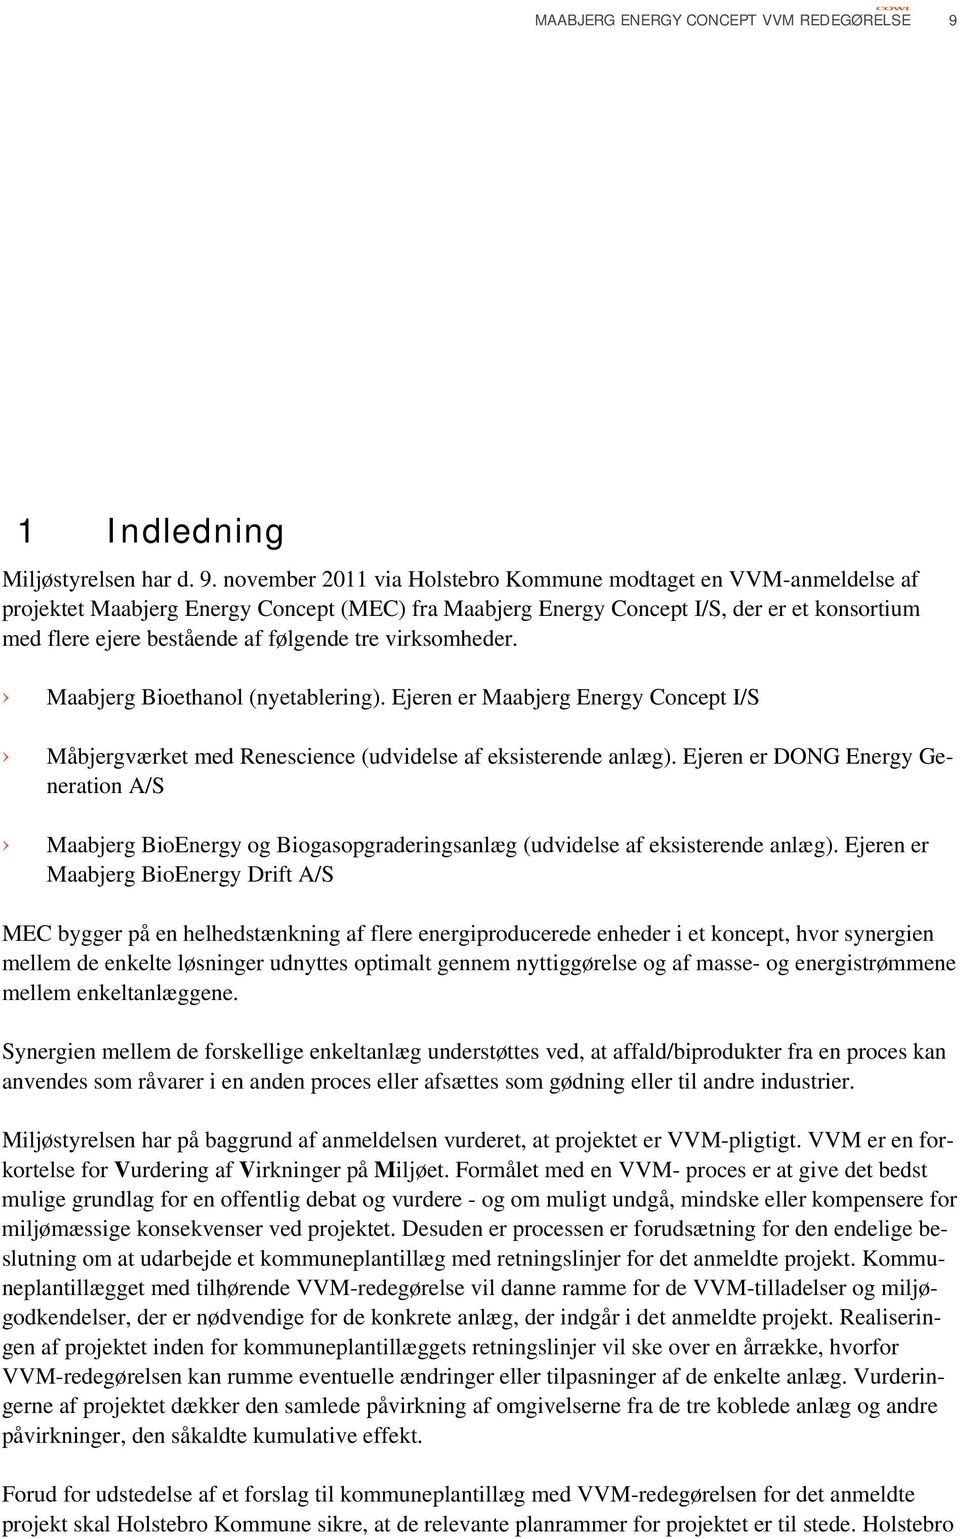 november 2011 via Holstebro Kommune modtaget en VVM-anmeldelse af projektet Maabjerg Energy Concept (MEC) fra Maabjerg Energy Concept I/S, der er et konsortium med flere ejere bestående af følgende